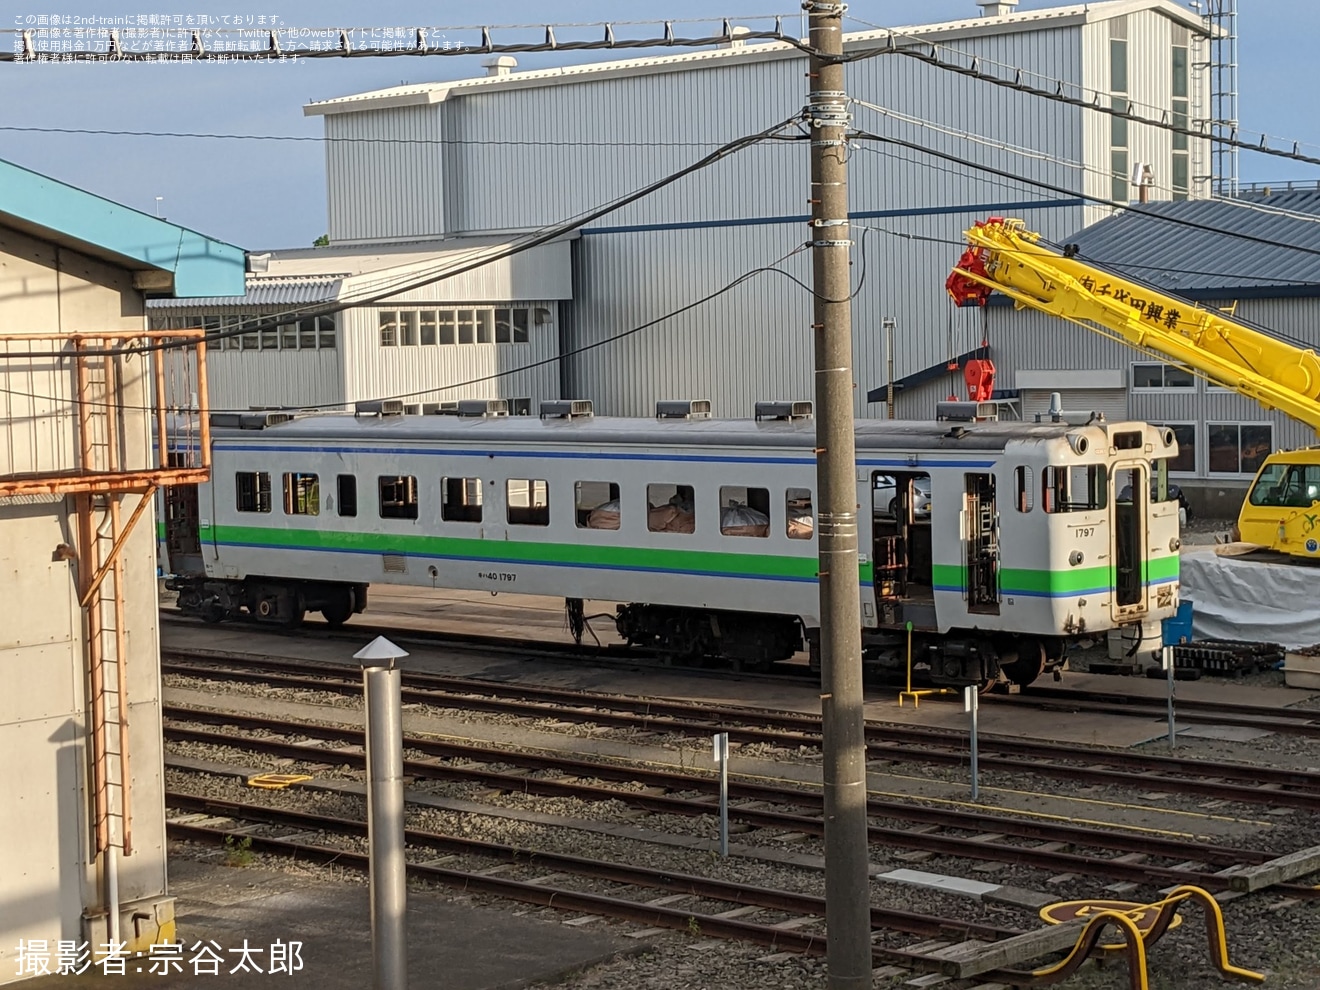 【JR北】キハ40-1797が釧路運輸車両所で解体作業中の拡大写真